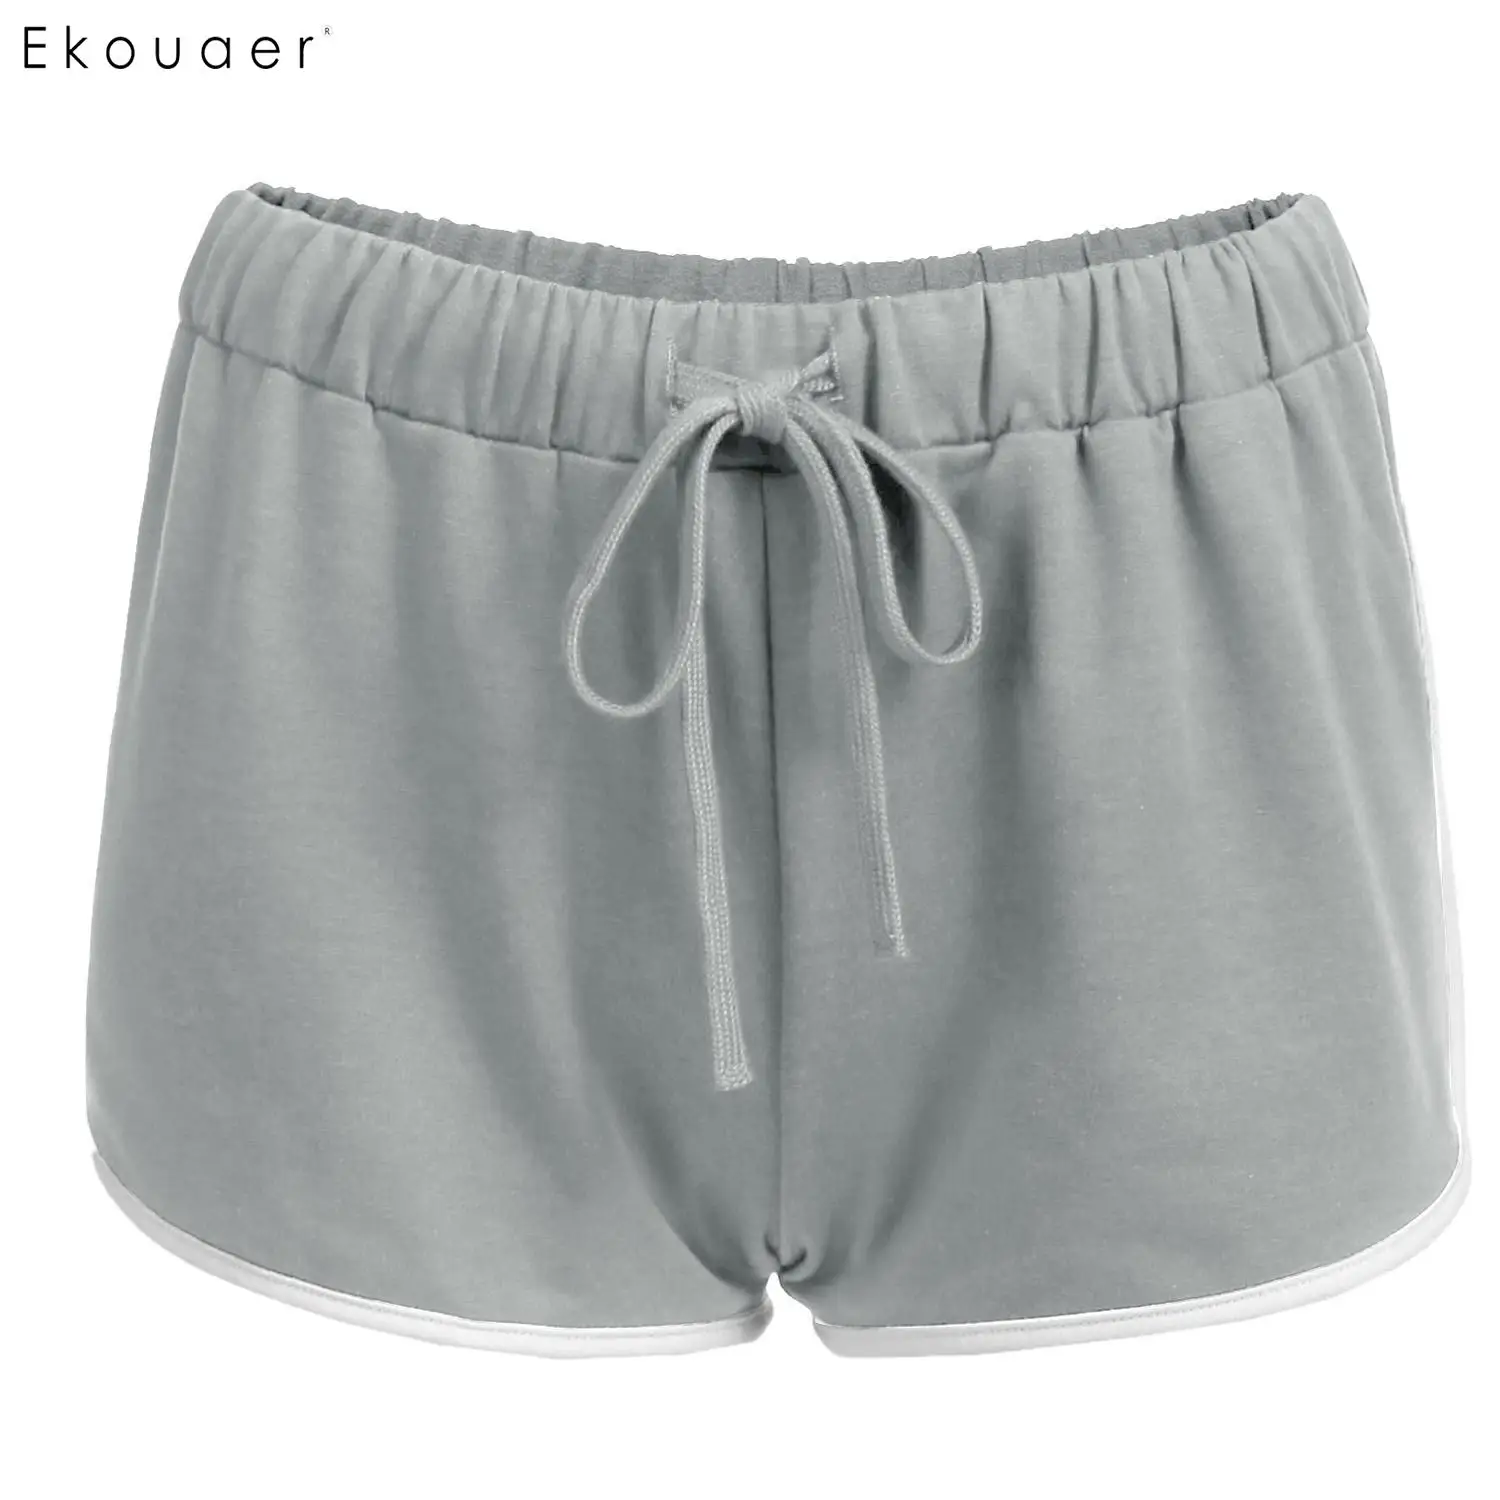 Ekouaer женские хлопковые Пижамные шорты с завязками на талии, Лоскутная Повседневная одежда для сна, короткие штаны, пижамы, шорты, Свободная Домашняя одежда для отдыха - Цвет: Gray